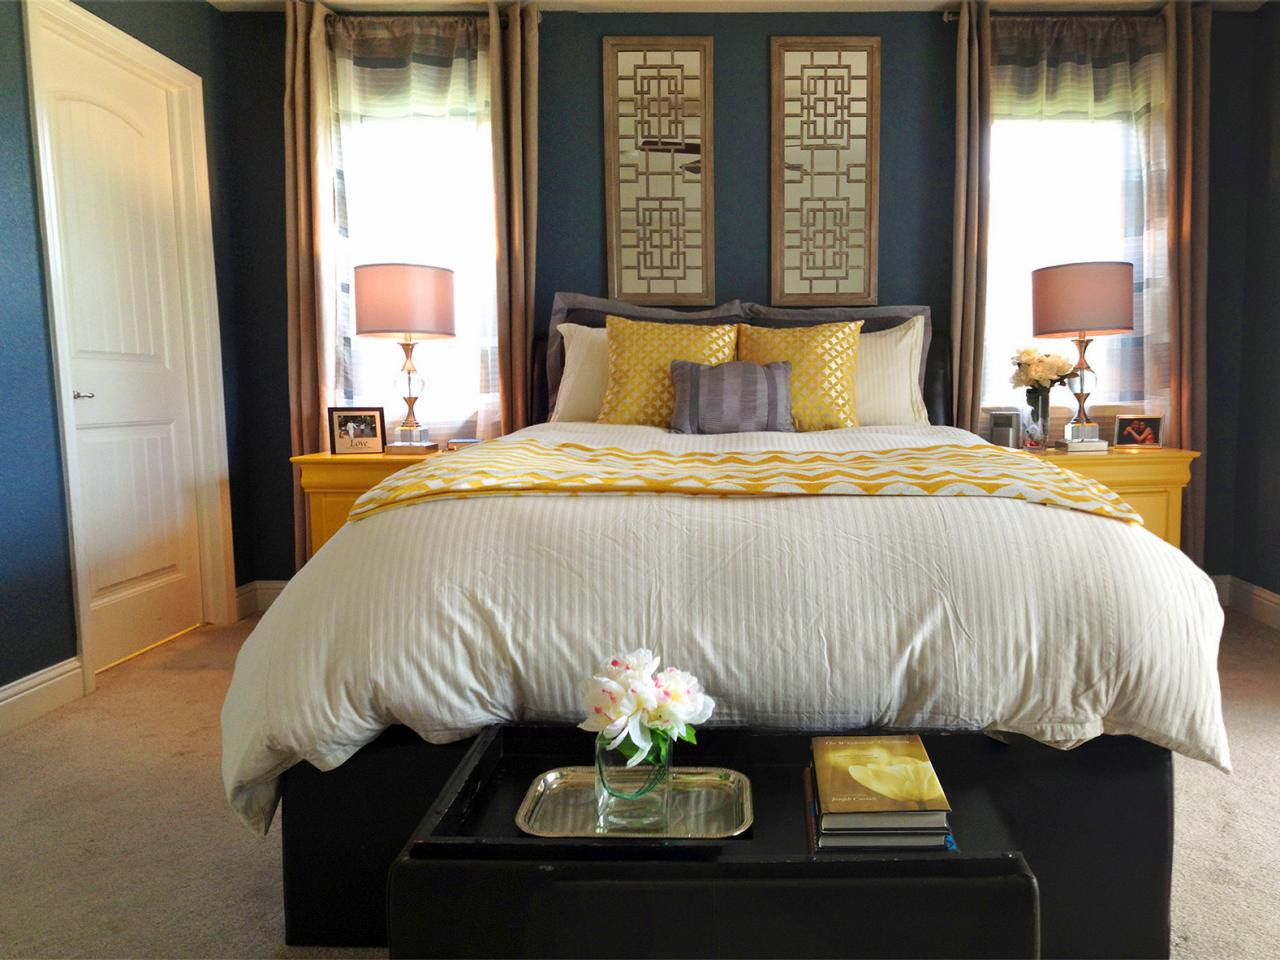 25 Stunning Transitional Bedroom Design Ideas